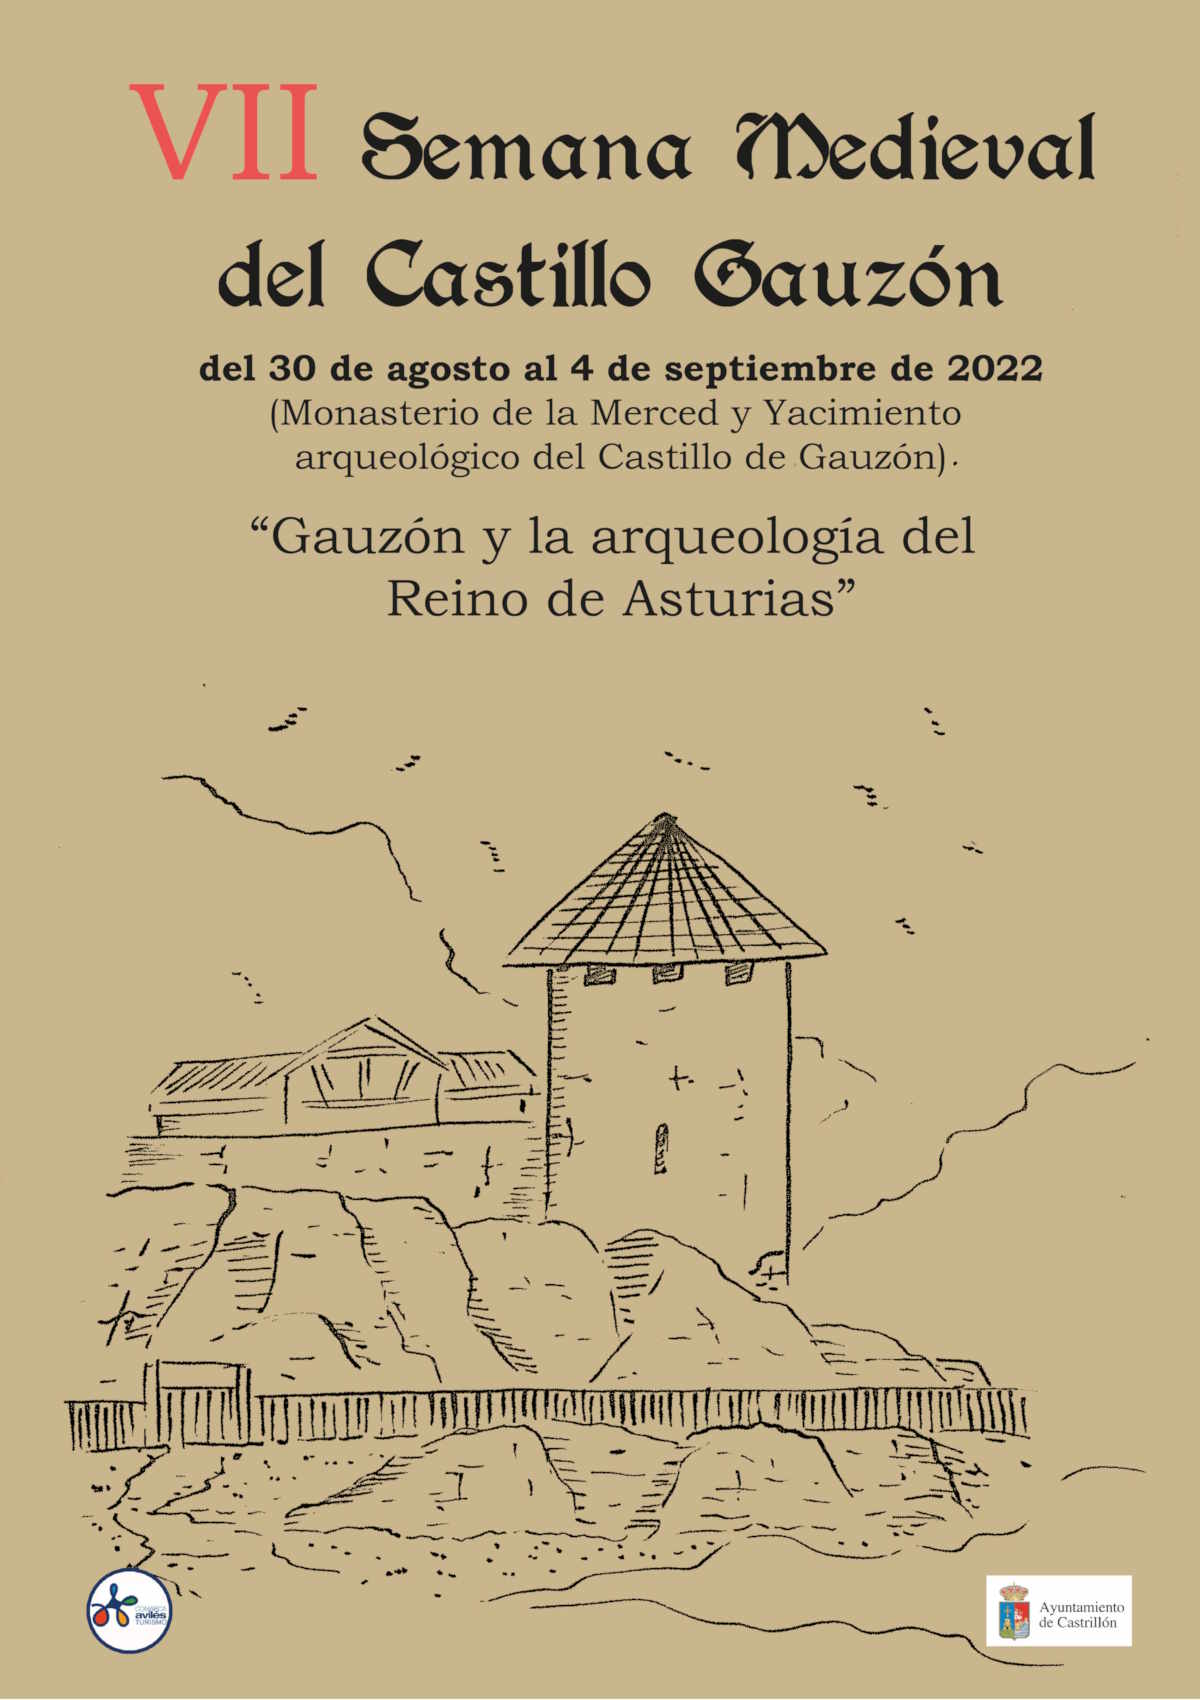 VII Semana Medieval del Castillo de Gauzon